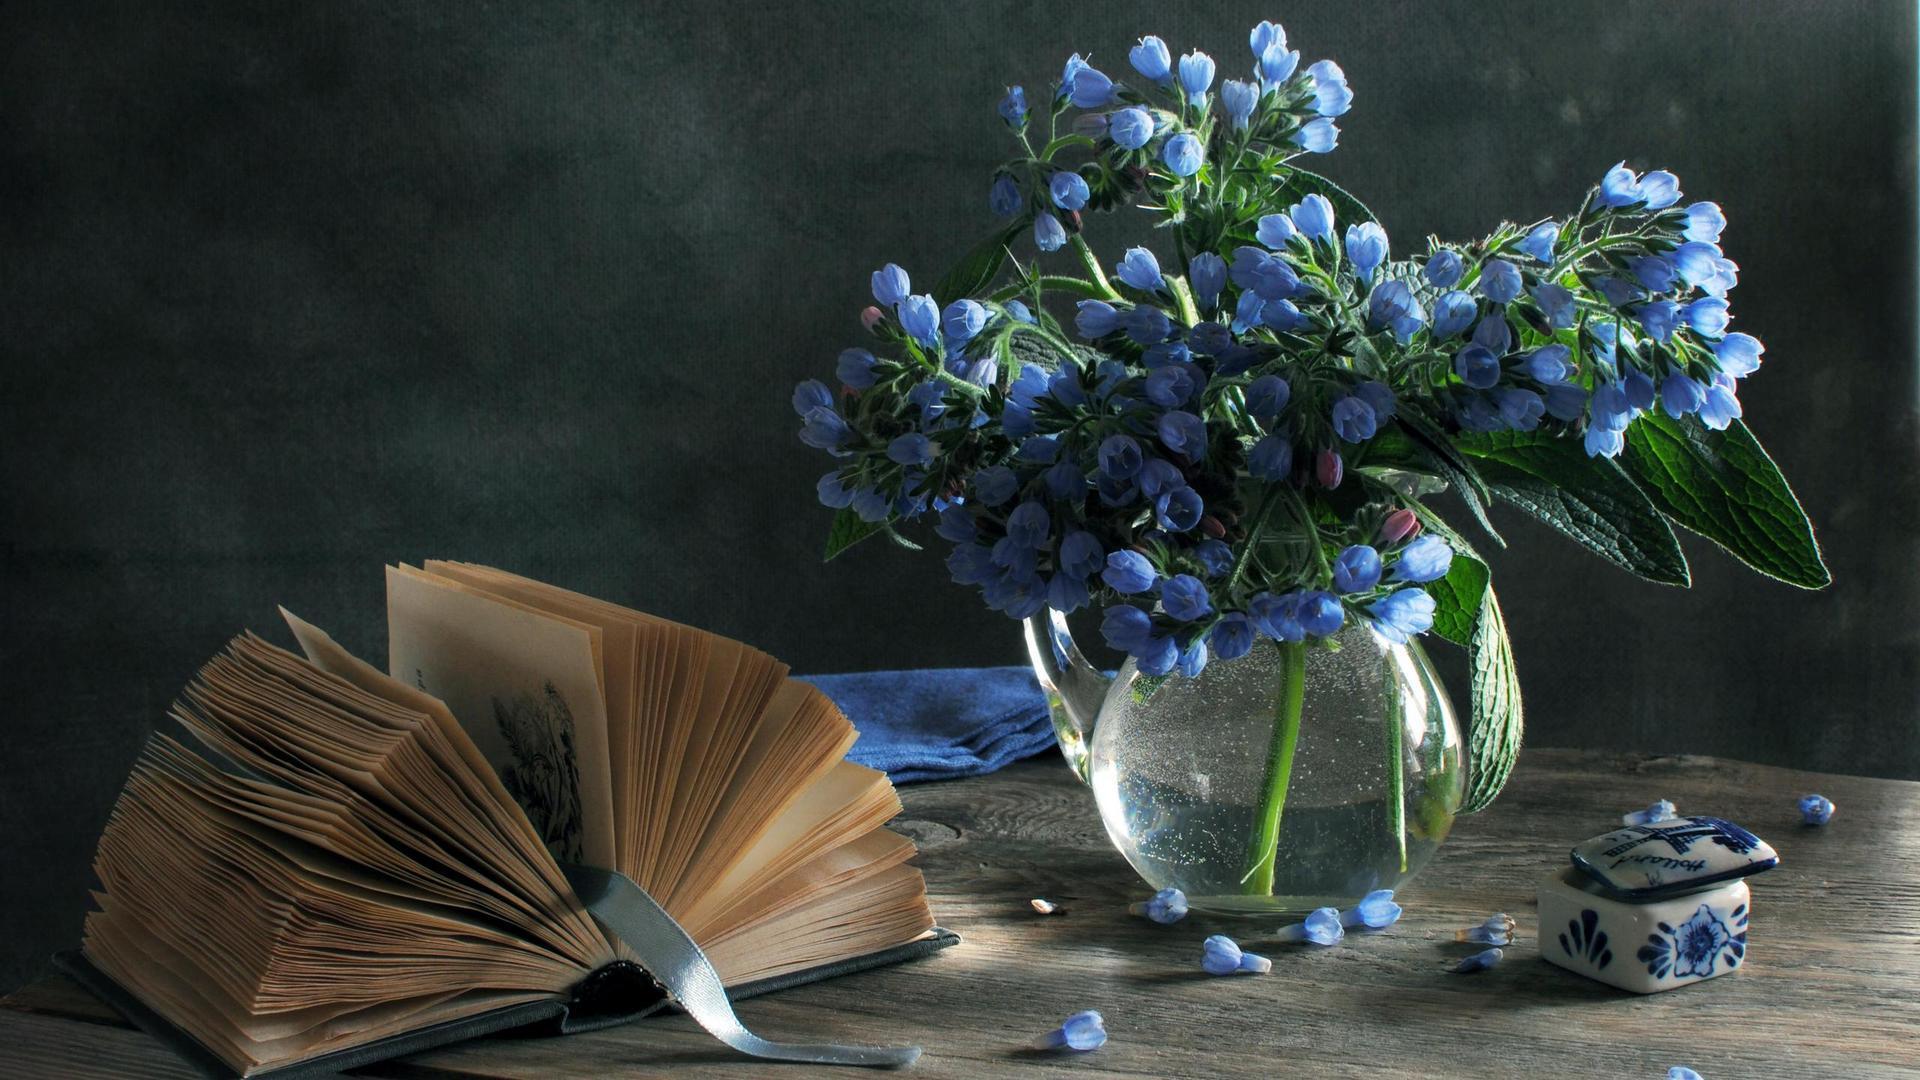 Book and flowers HD desktop wallpaper : Widescreen : High Definition ...